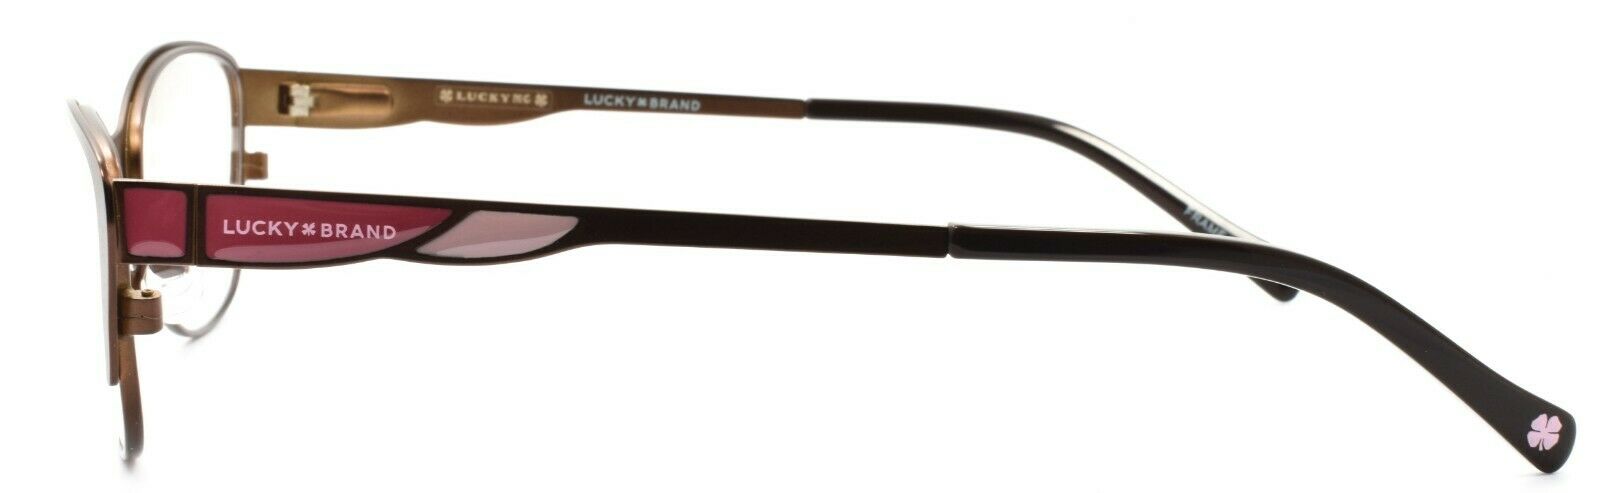 3-LUCKY BRAND D704 Women's Eyeglasses Frames 50-15-135 Brown + CASE-751286282238-IKSpecs